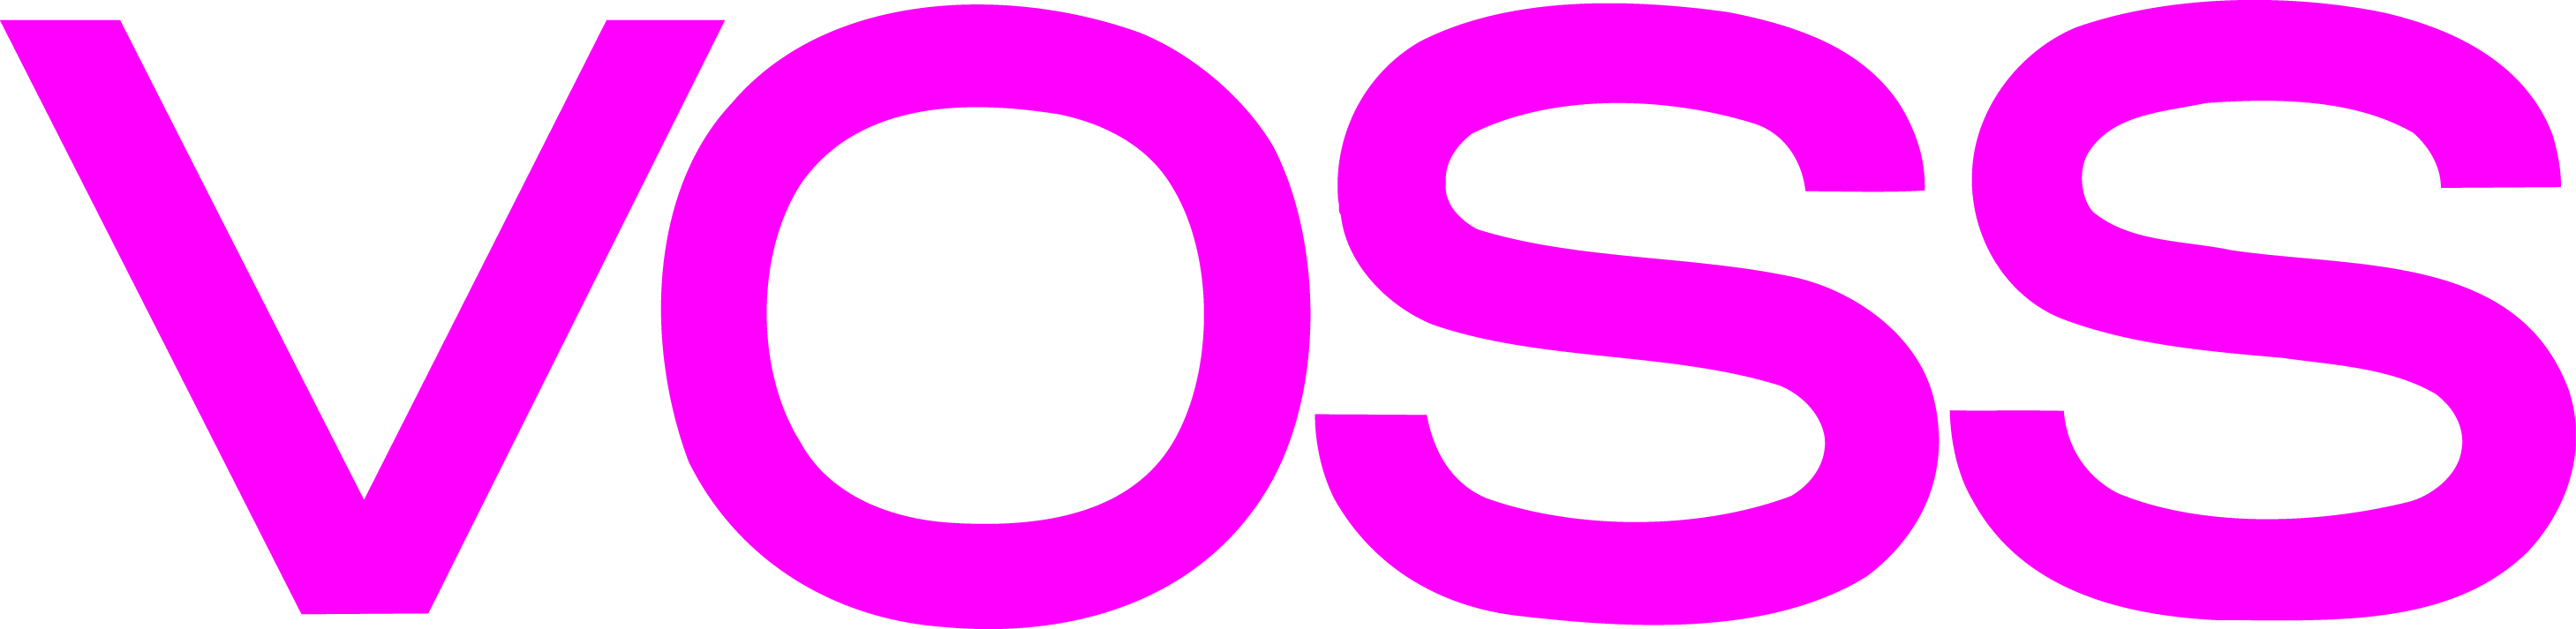 VOSS Fluid_logo